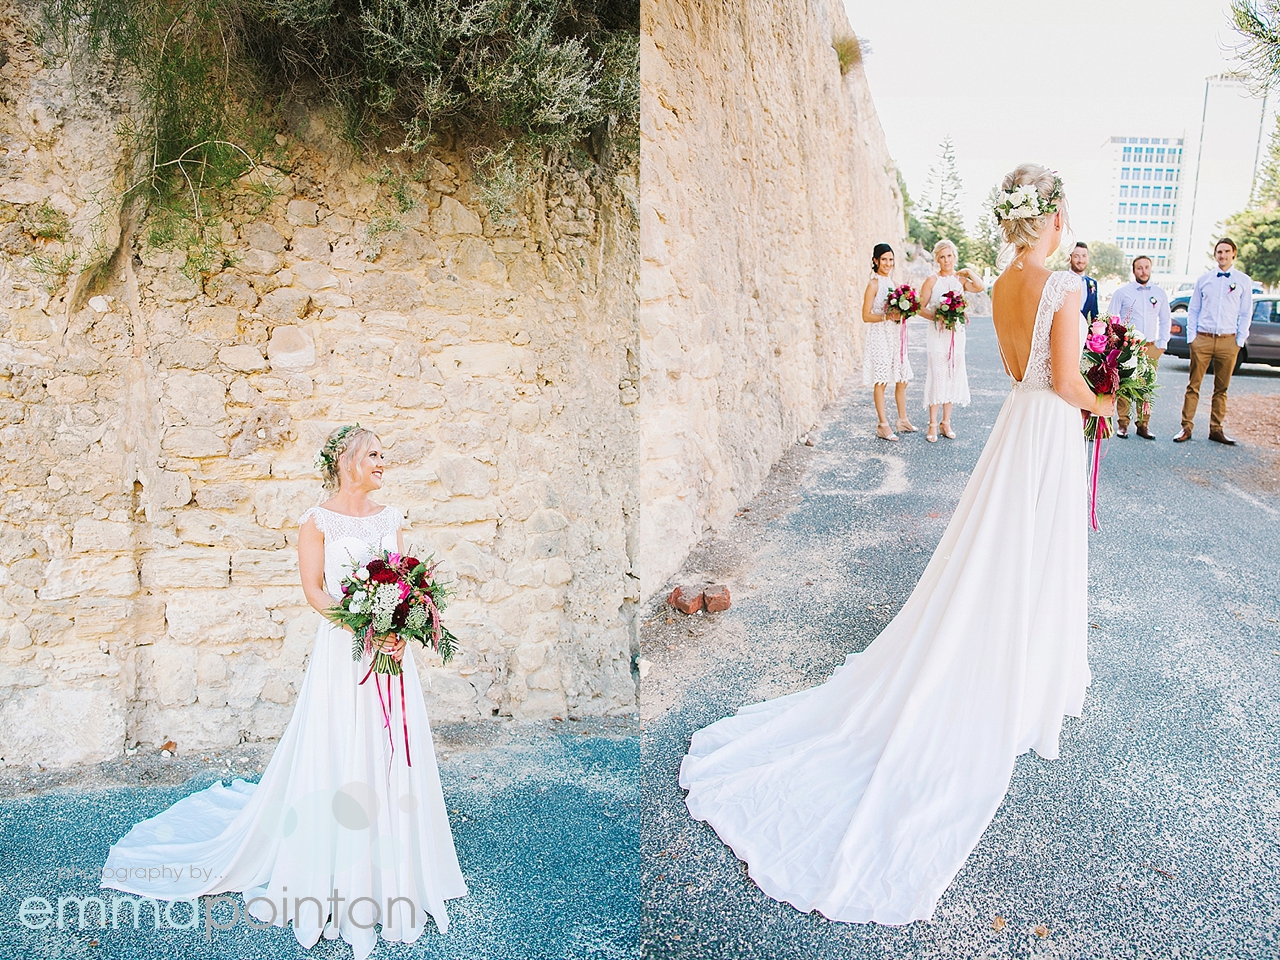 Hobnob bridal dress in fremantle